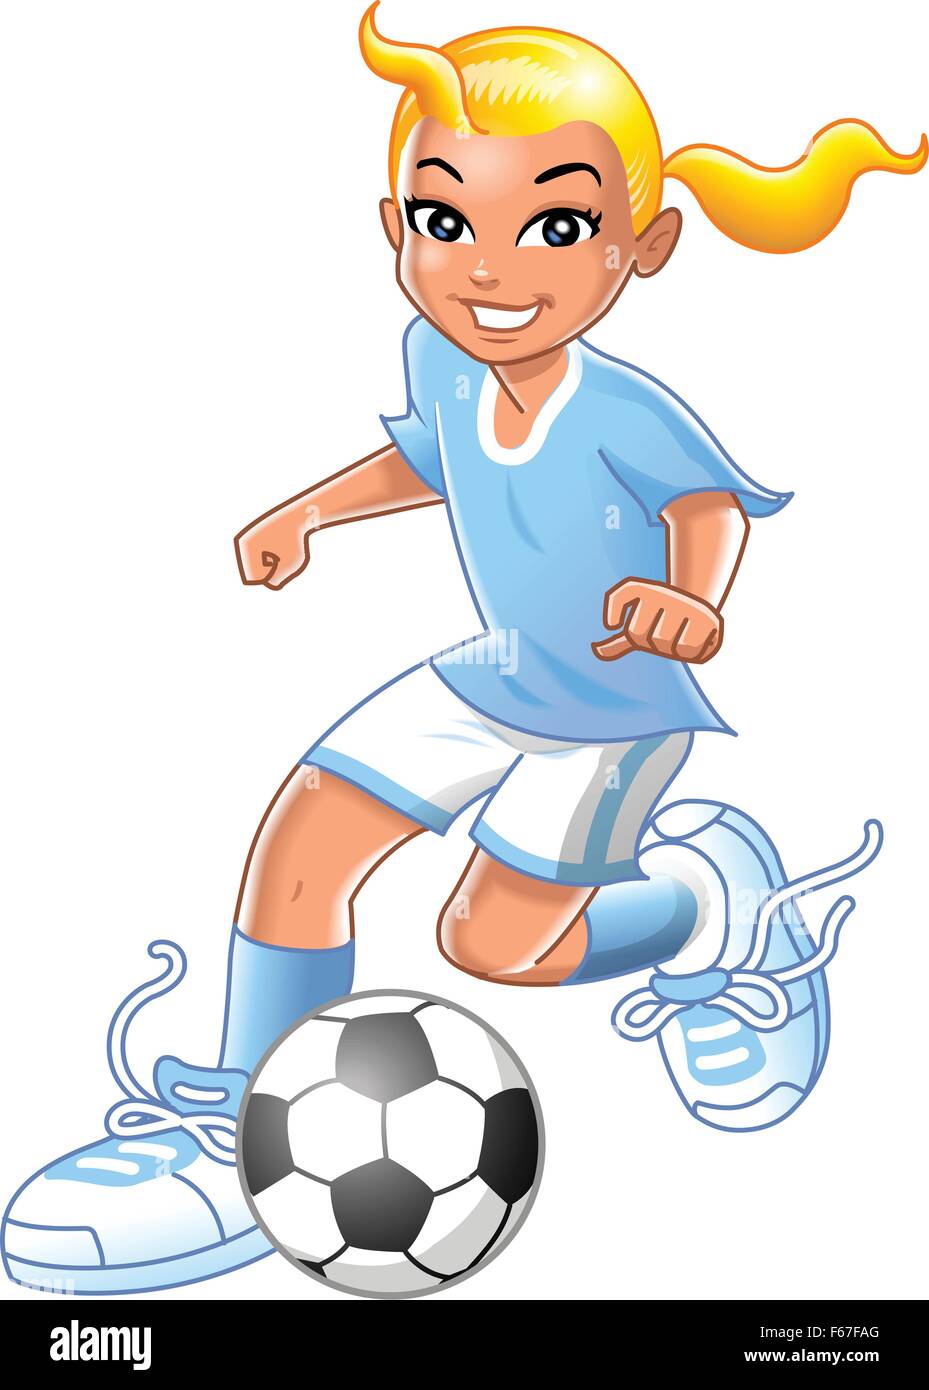 Jolie jeune fille blonde à jouer au soccer ou de football, dribbler le ballon de soccer Illustration de Vecteur